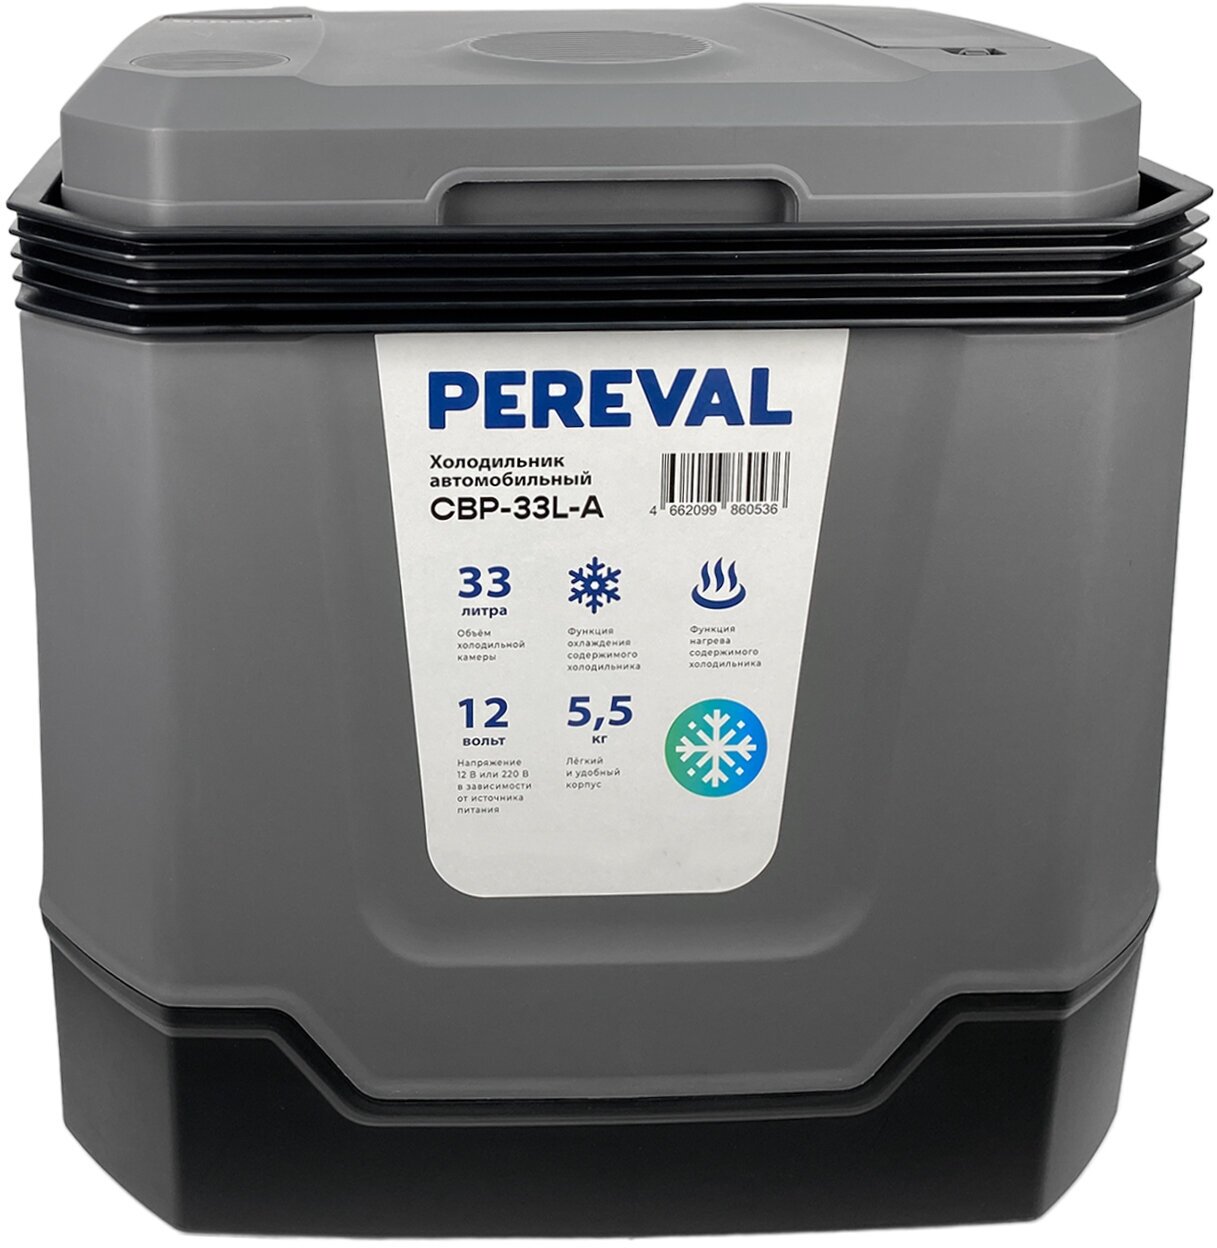 Холодильник Pereval термоэлектрический 33L